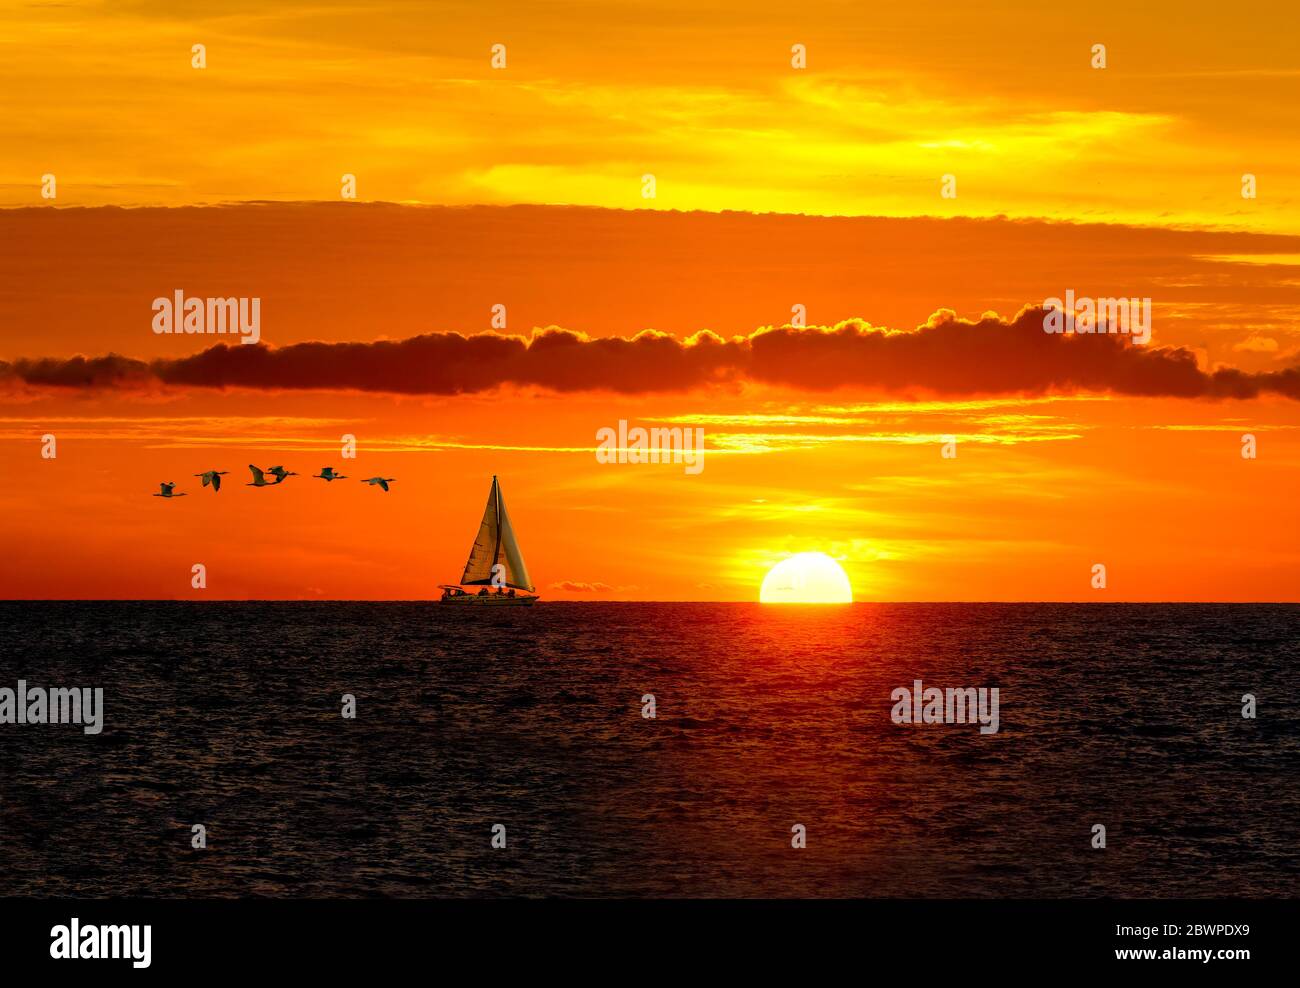 Un Voilier longe l'océan tandis que le soleil se met au-dessus des nuages sur l'horizon et les oiseaux voguent en arrière-plan Banque D'Images